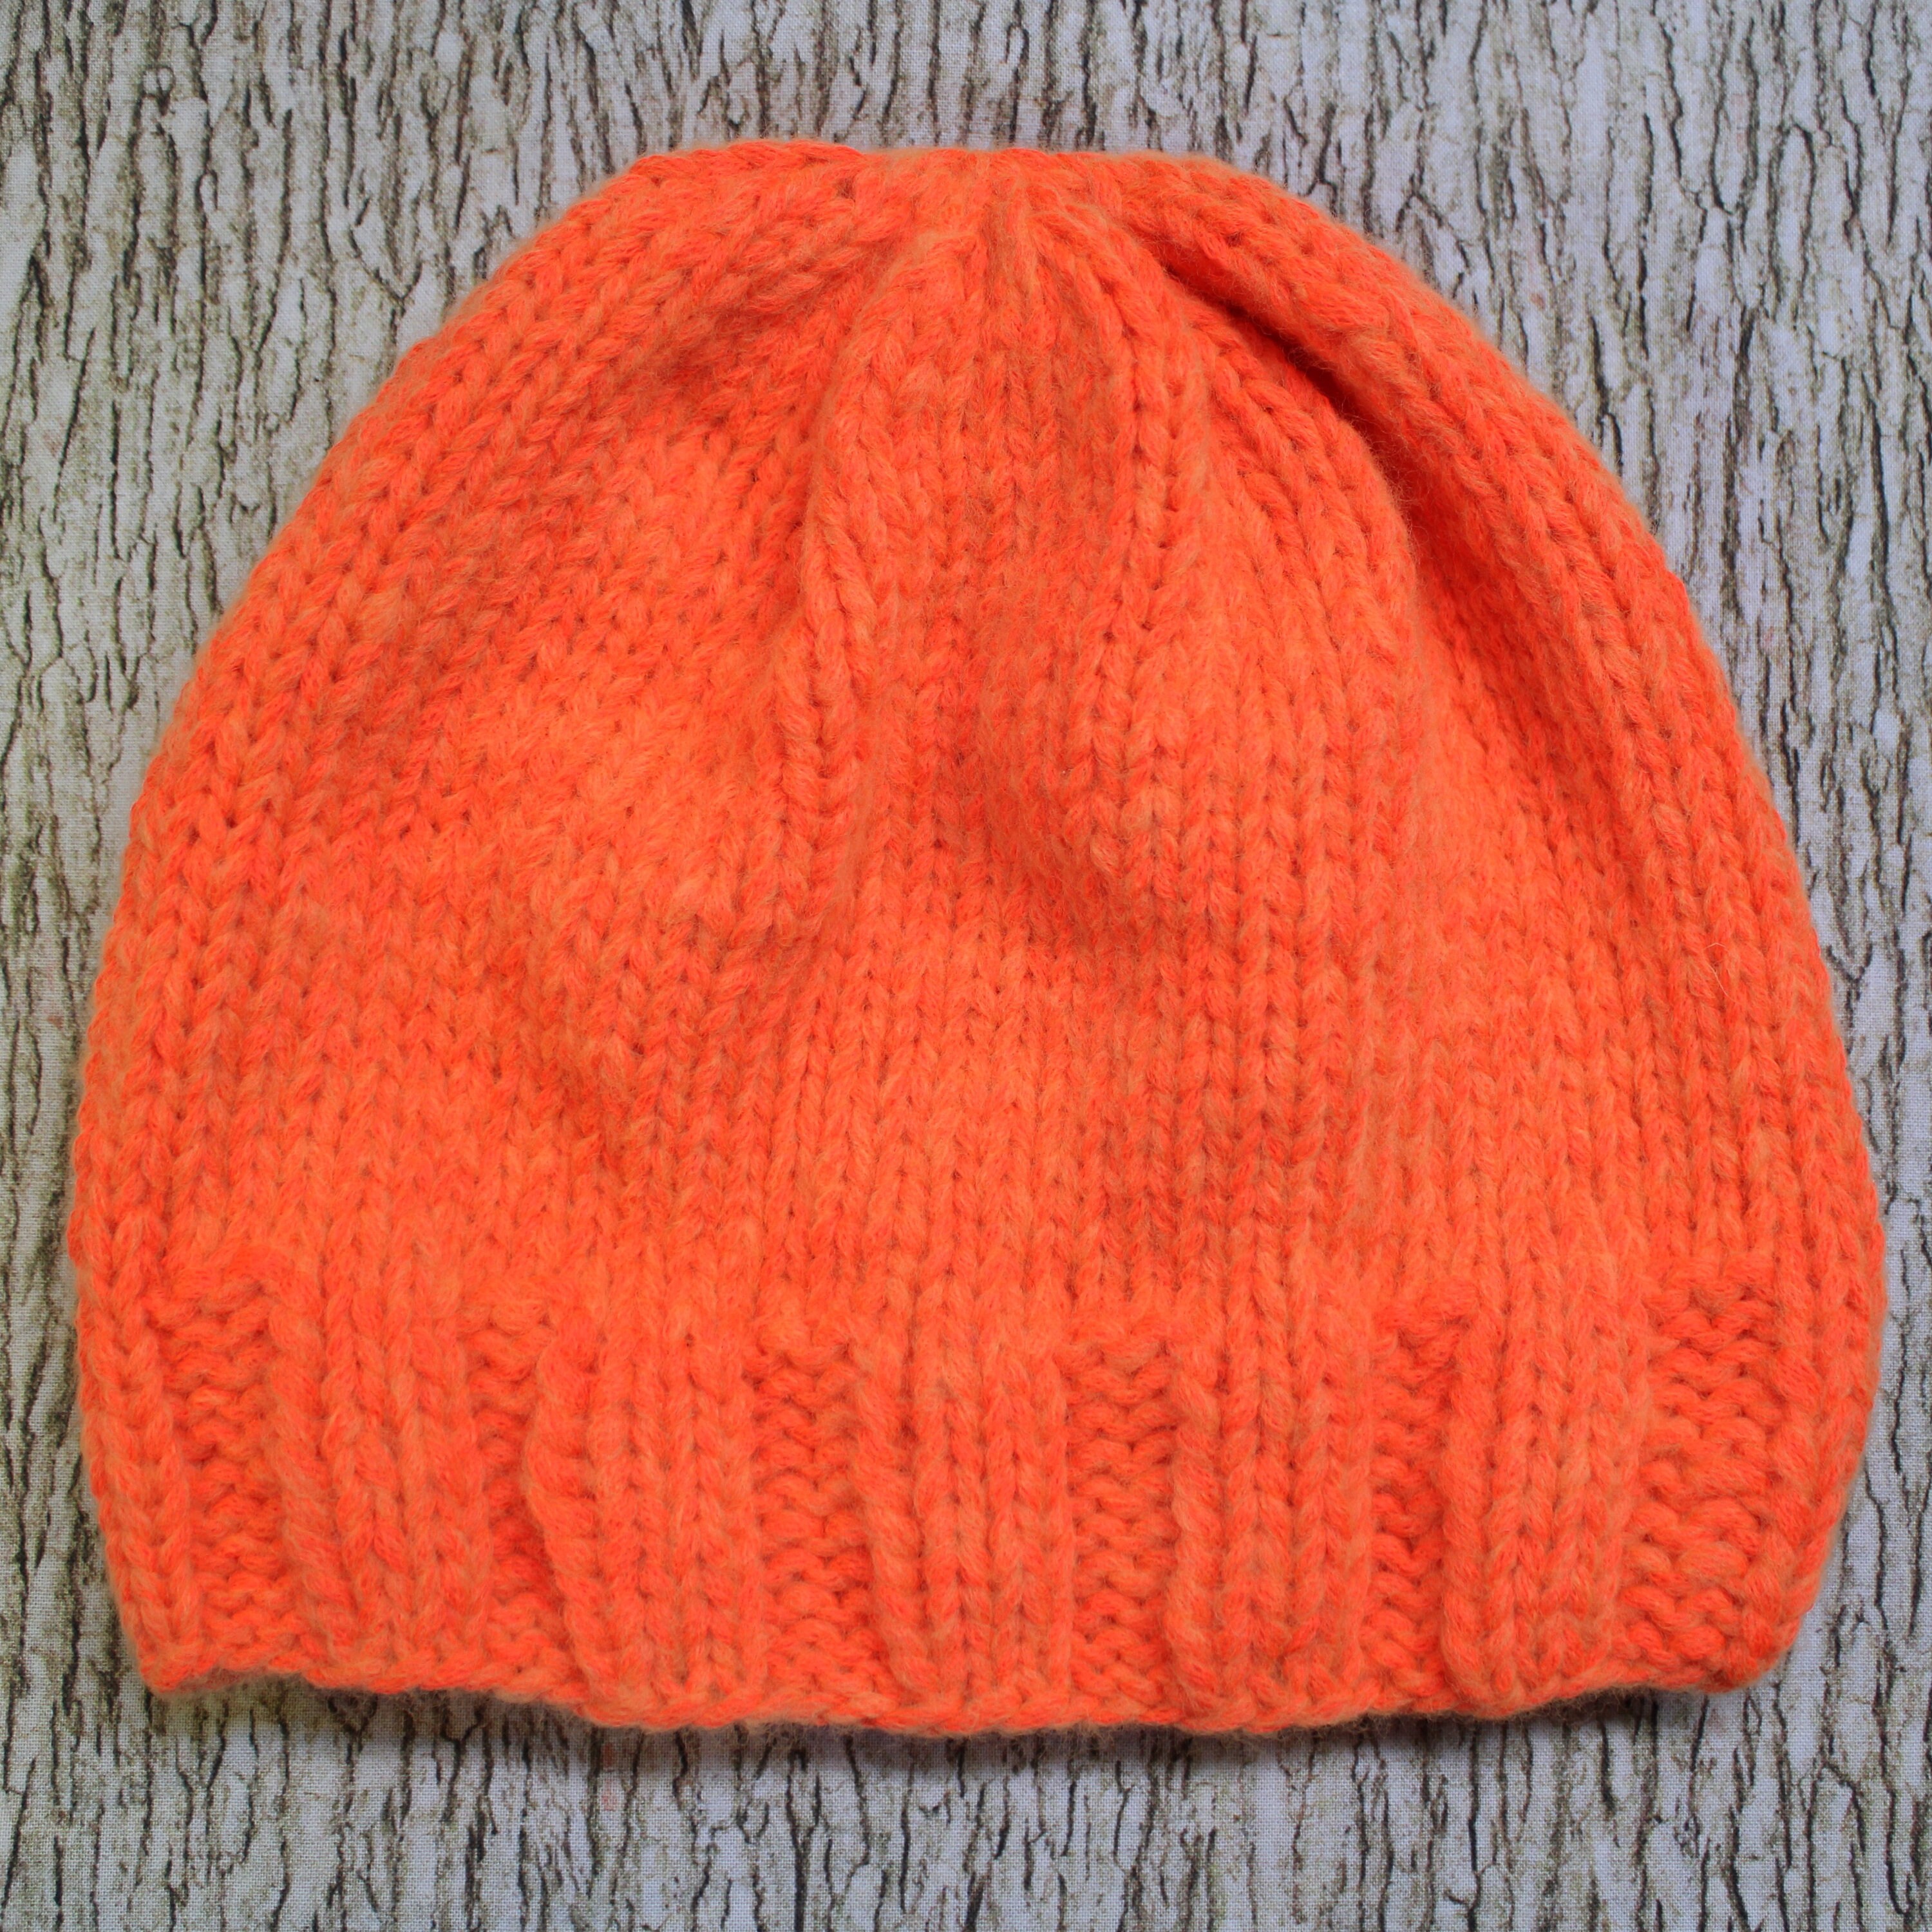 Maine 3 Season Brim-lined Blaze Orange Merino Wool Blend Hunting Hat  Fleece-lined Brim Hand Knit by Mountainblaze - Etsy